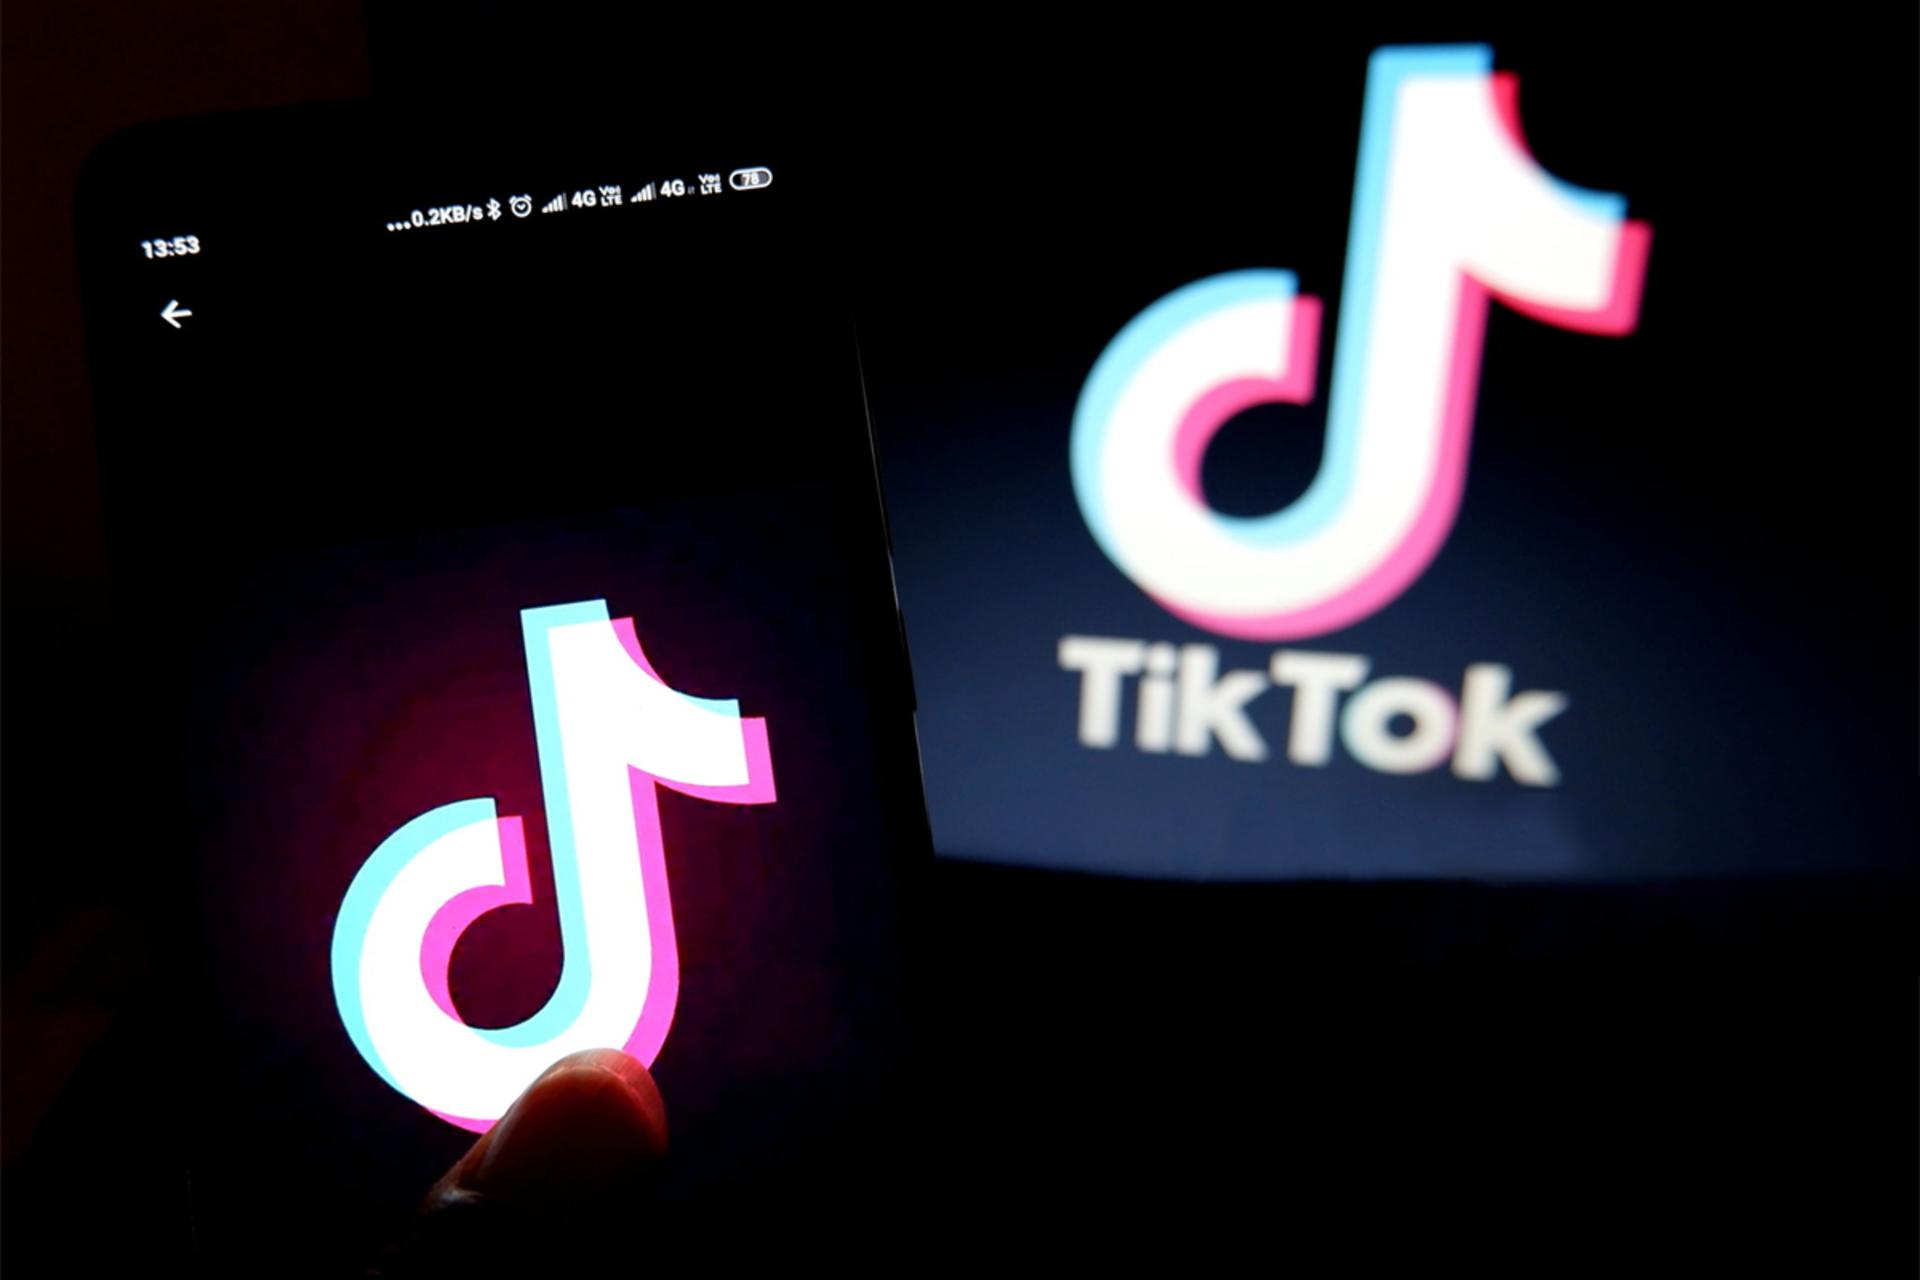 لوگو تیک تاک / TikTok Logo روی گوشی و پس زمینه